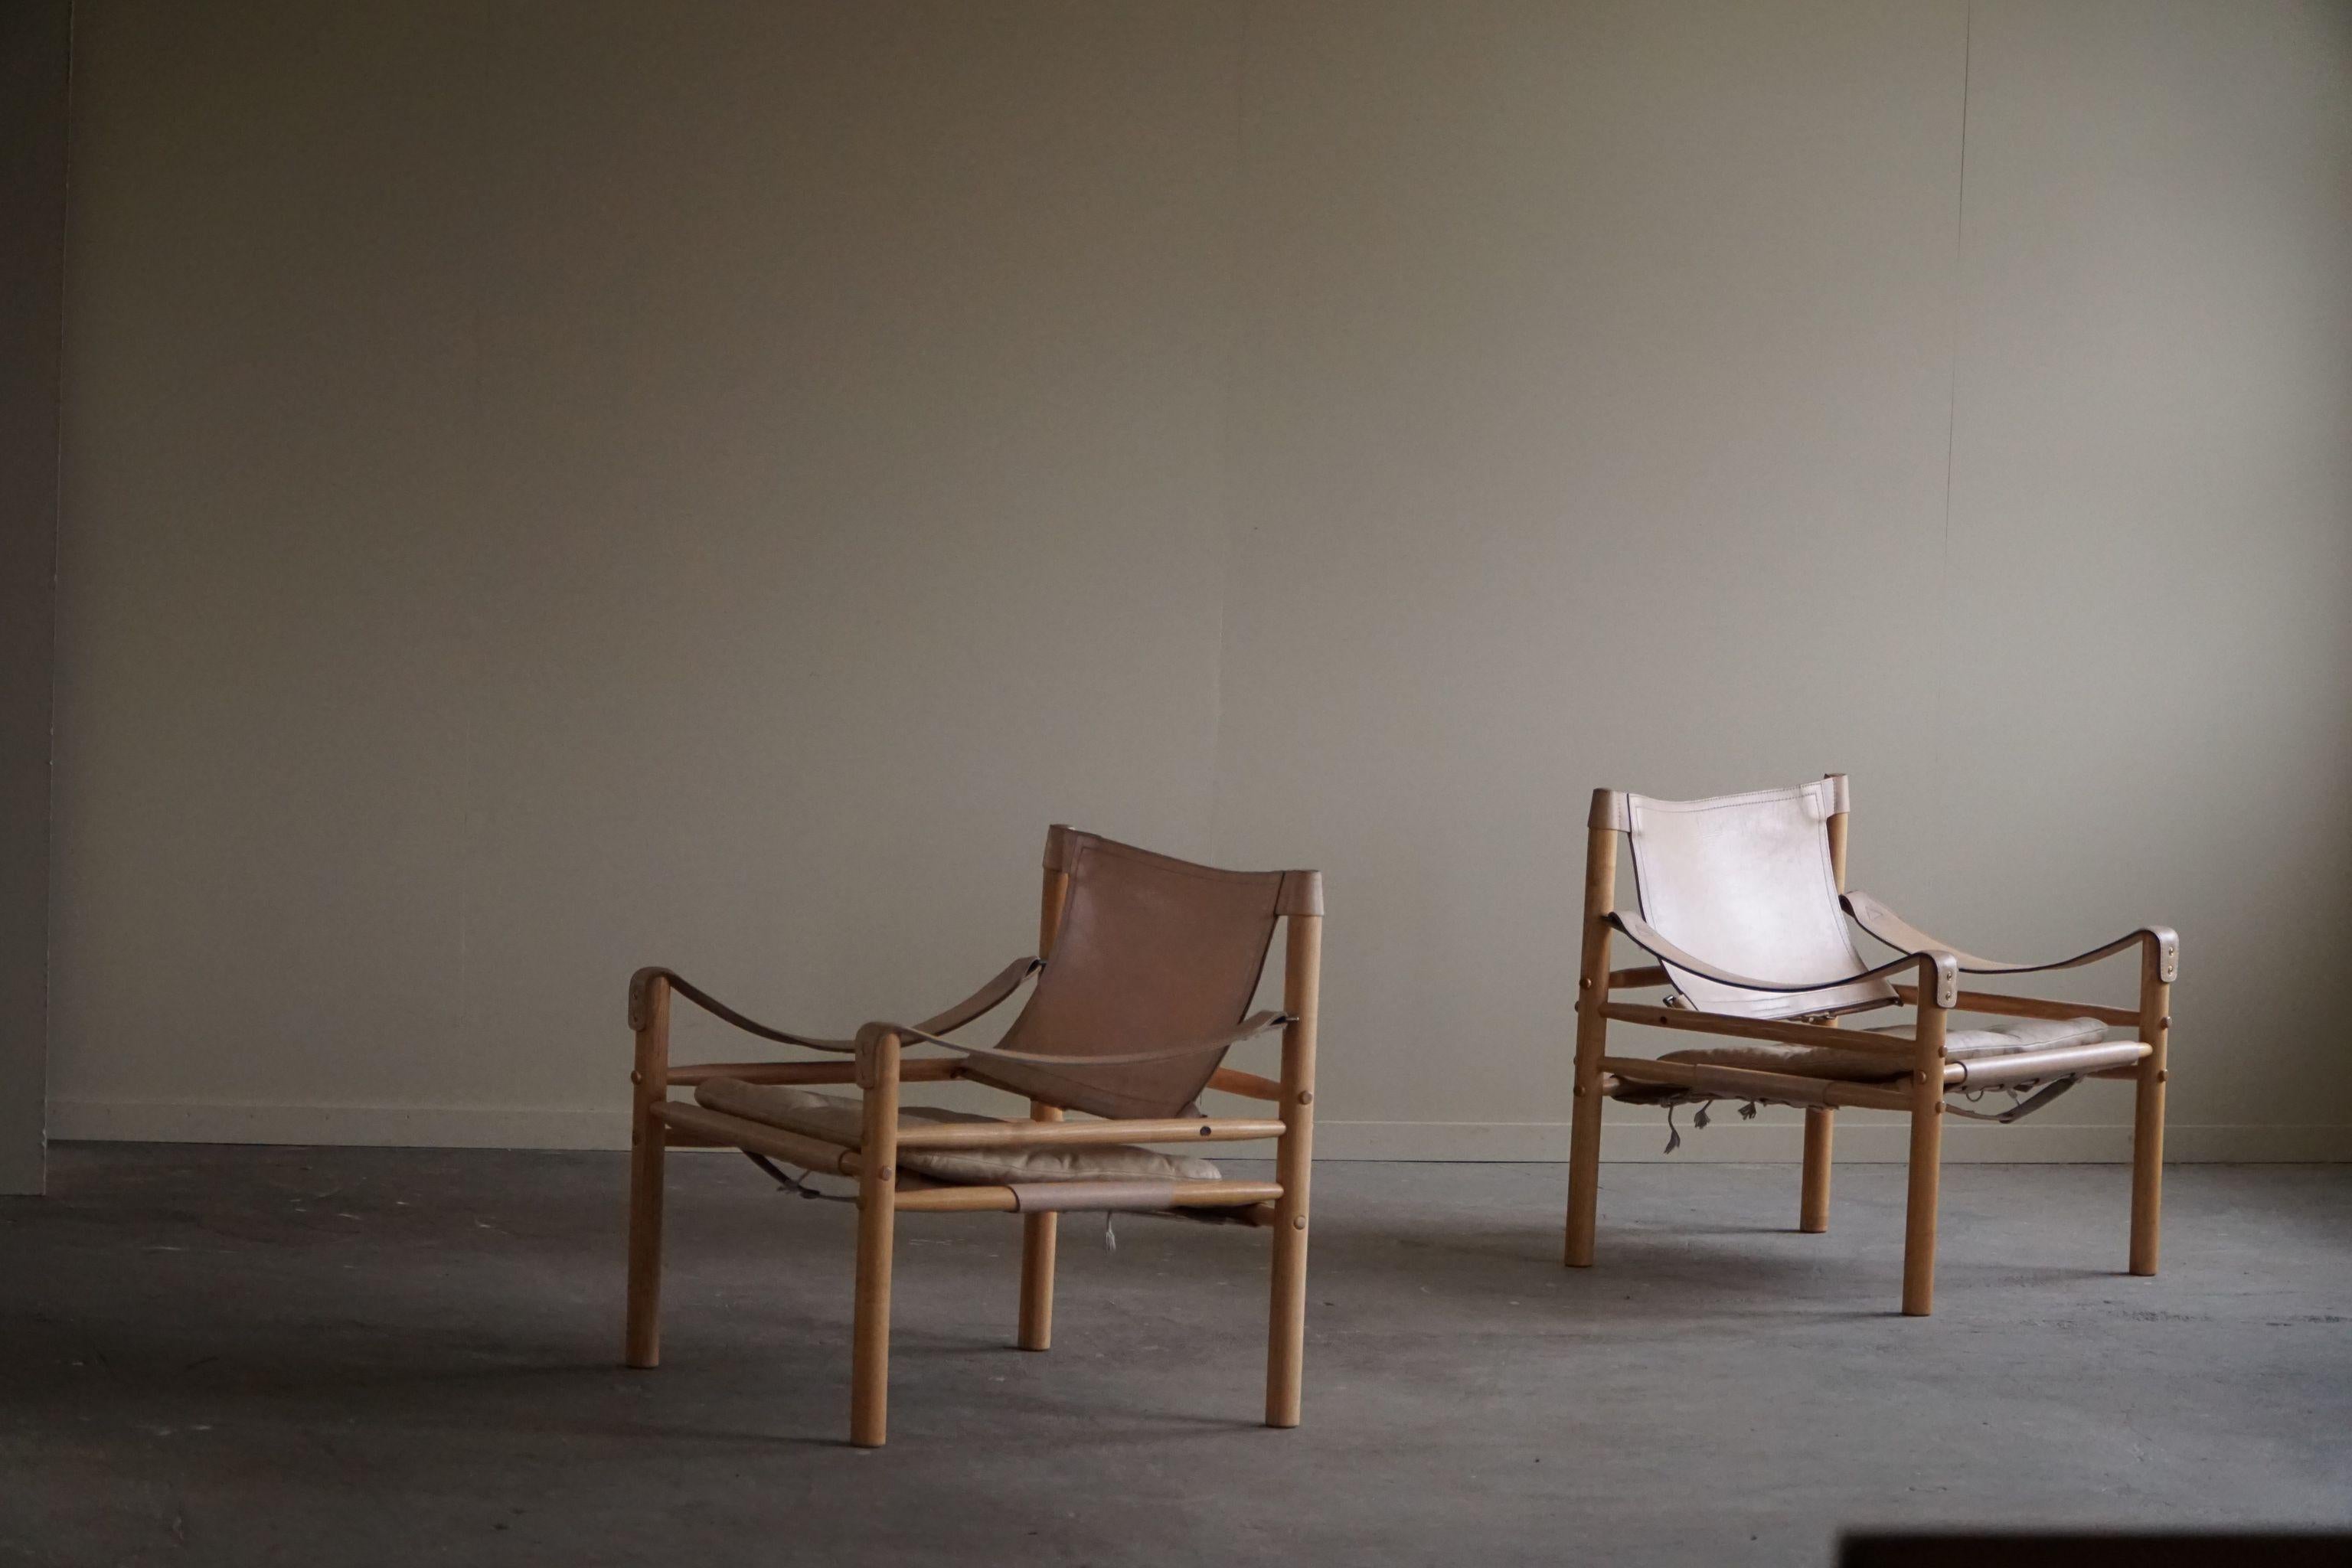 Une belle paire de chaises safari en cuir crème et structure en frêne. Conçu par Arne Norell, produit par Arne Norell AB à Aneby, en Suède, dans les années 1960.

Ces fauteuils attrayants s'intègrent dans de nombreux styles d'intérieur. Une